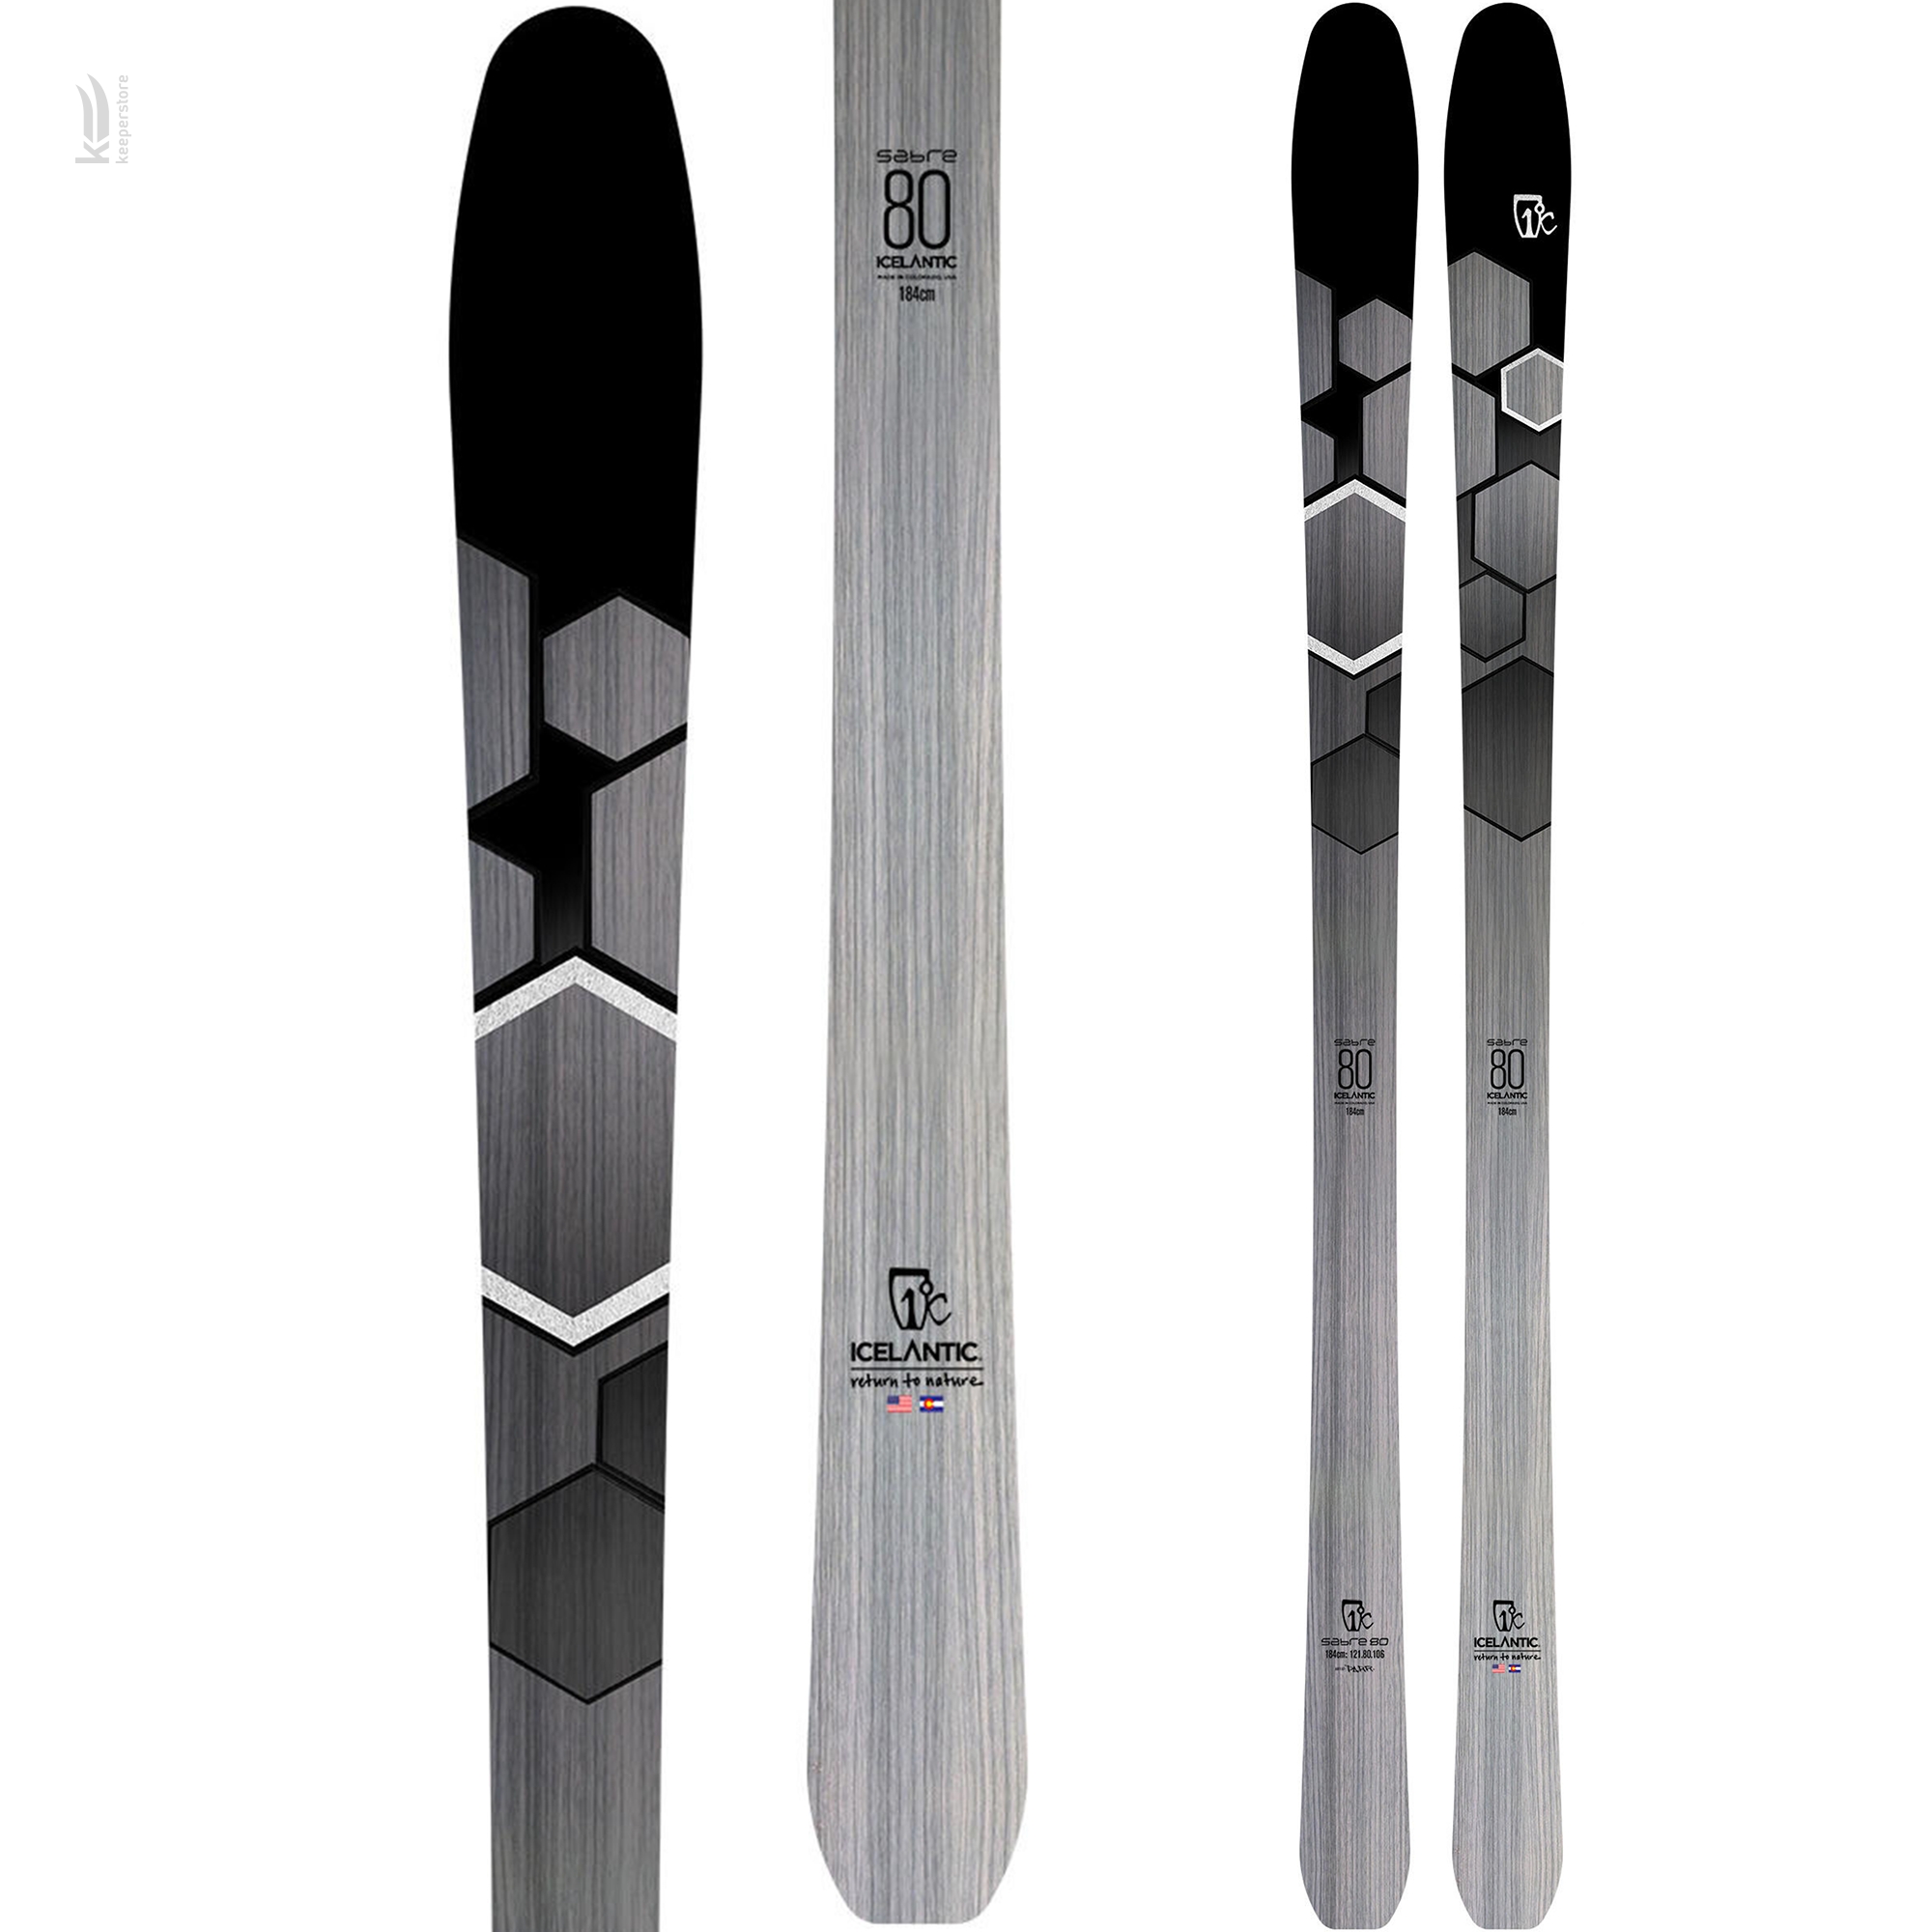 Лыжи для карвинга Icelantic Sabre 80 2019/2020 174cm